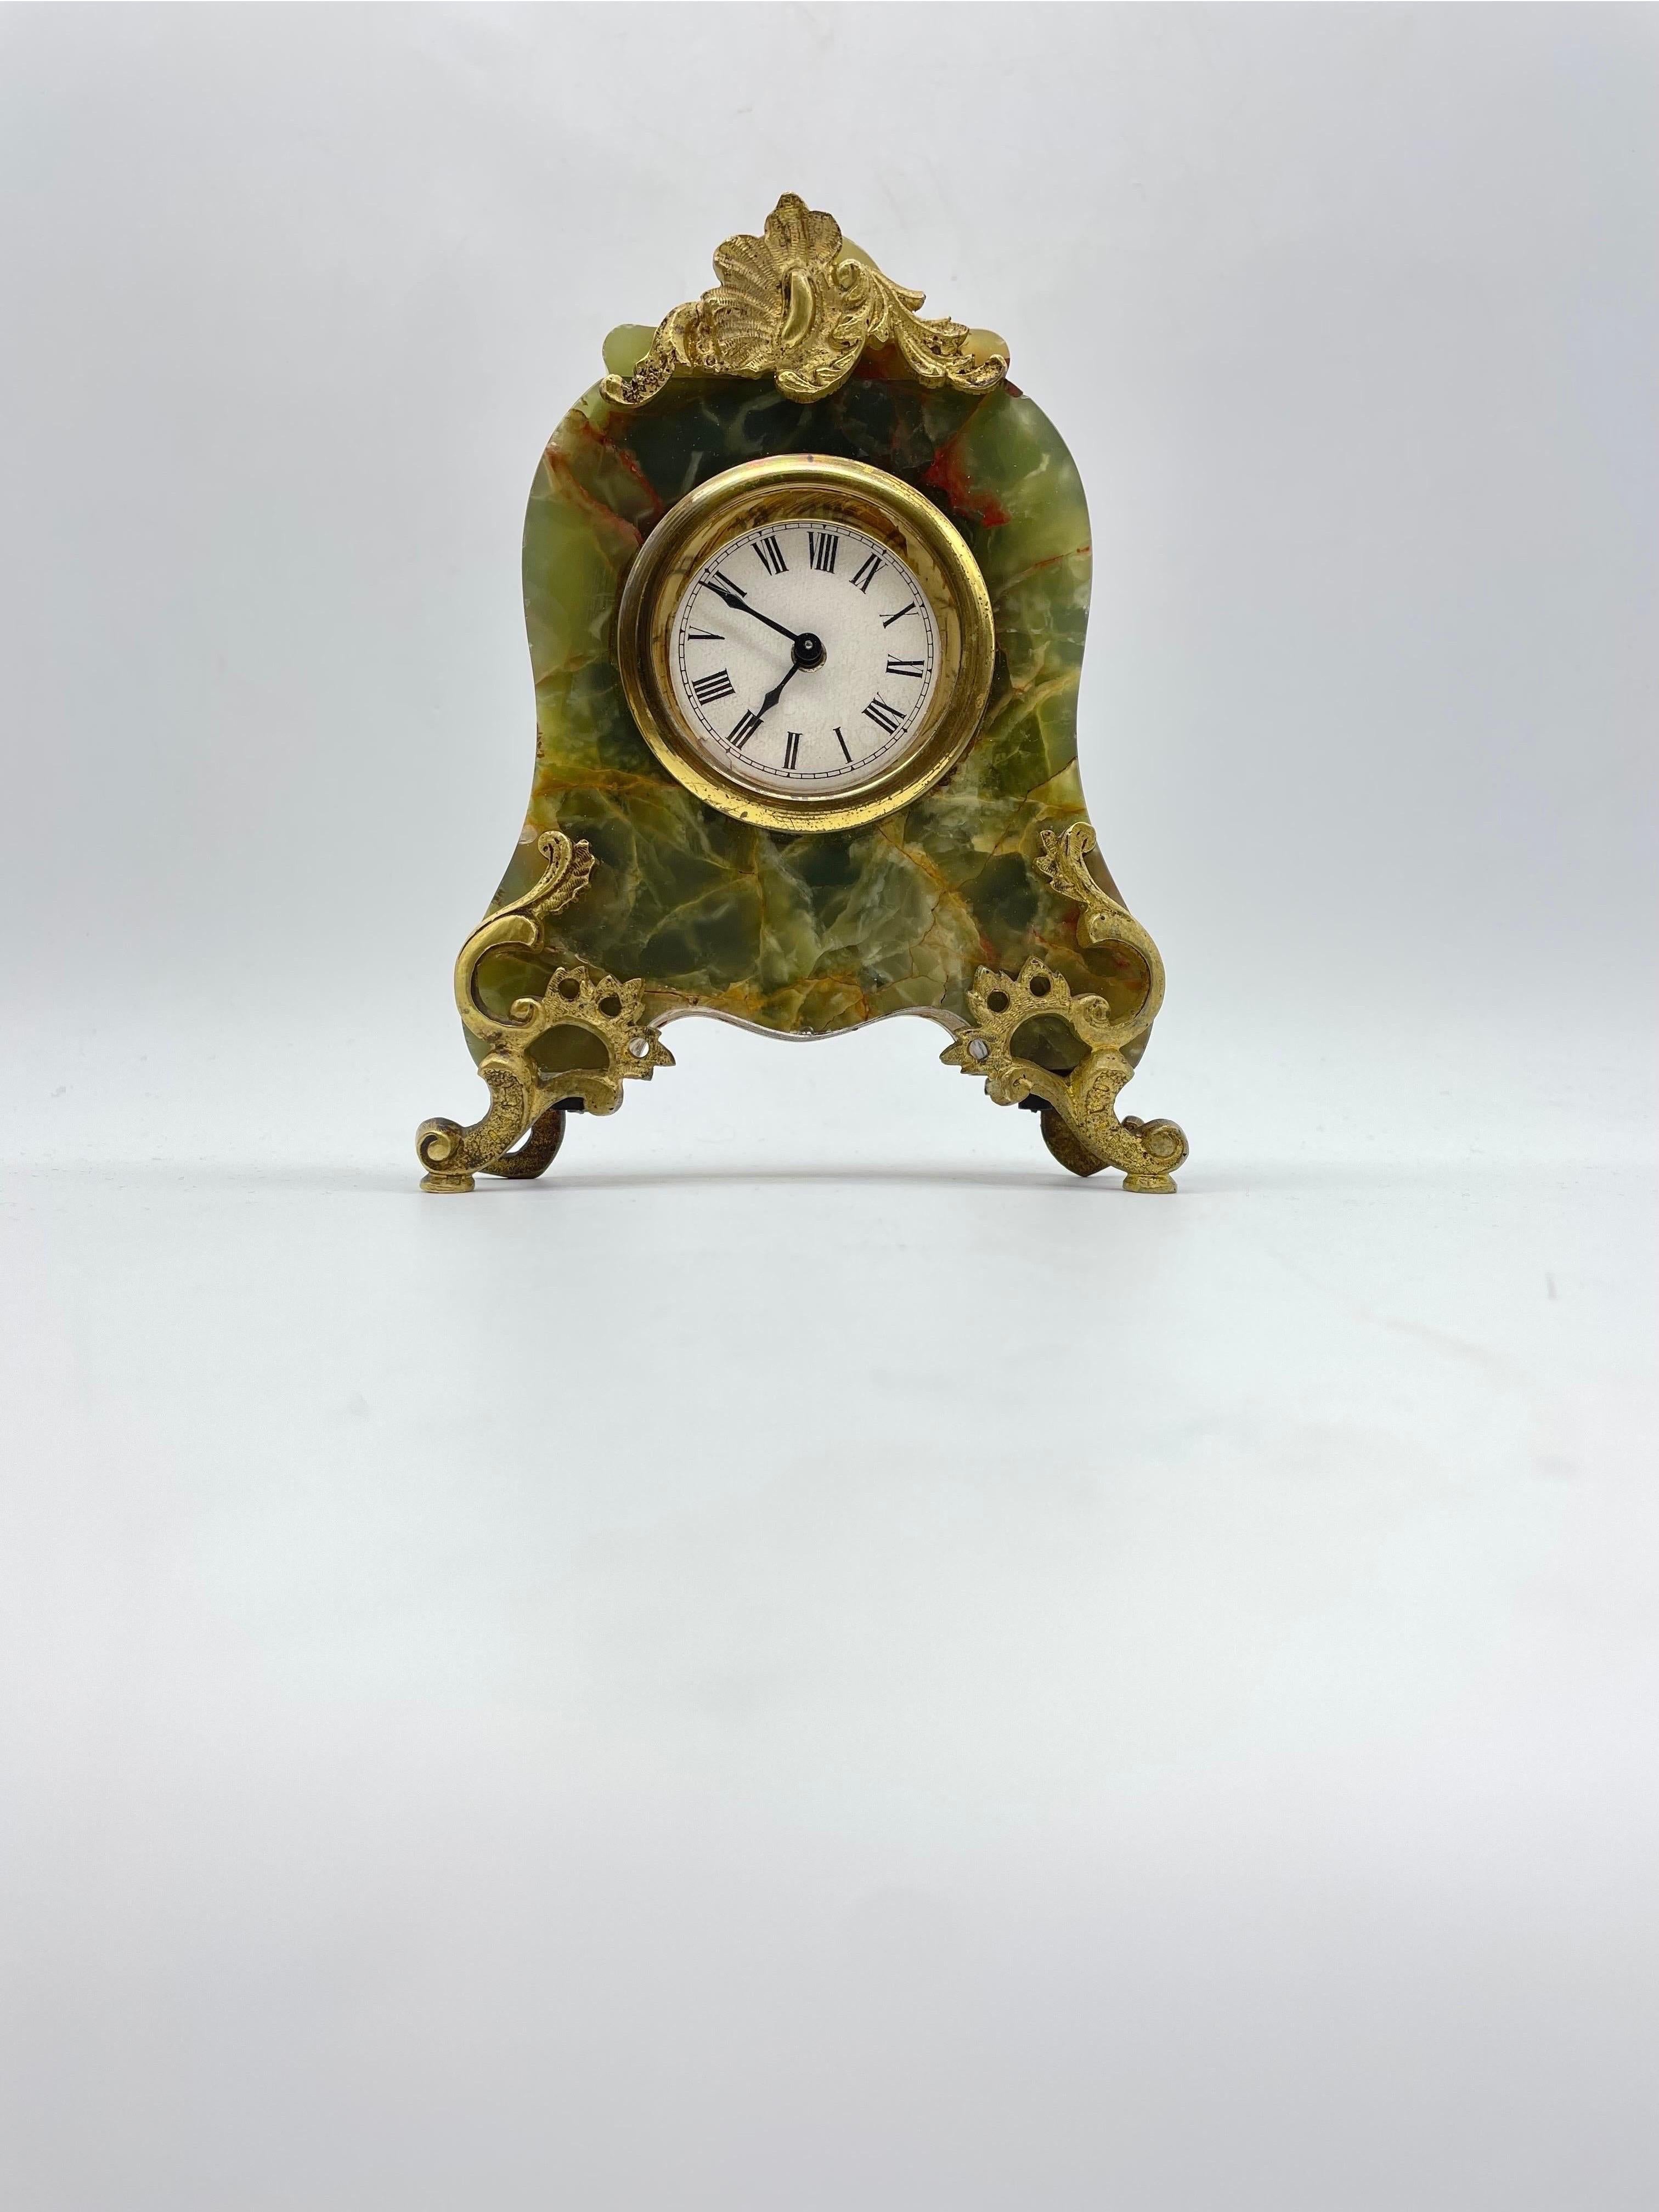 traumhaft schöne, filigrane Marmortischuhr mit bronzeverzierten Beschlägen, echter Onyx
, altersbedingter Zustand, wie auf den Bildern zu sehen ist, 
diese schöne Uhr muss vom Käufer überholt werden